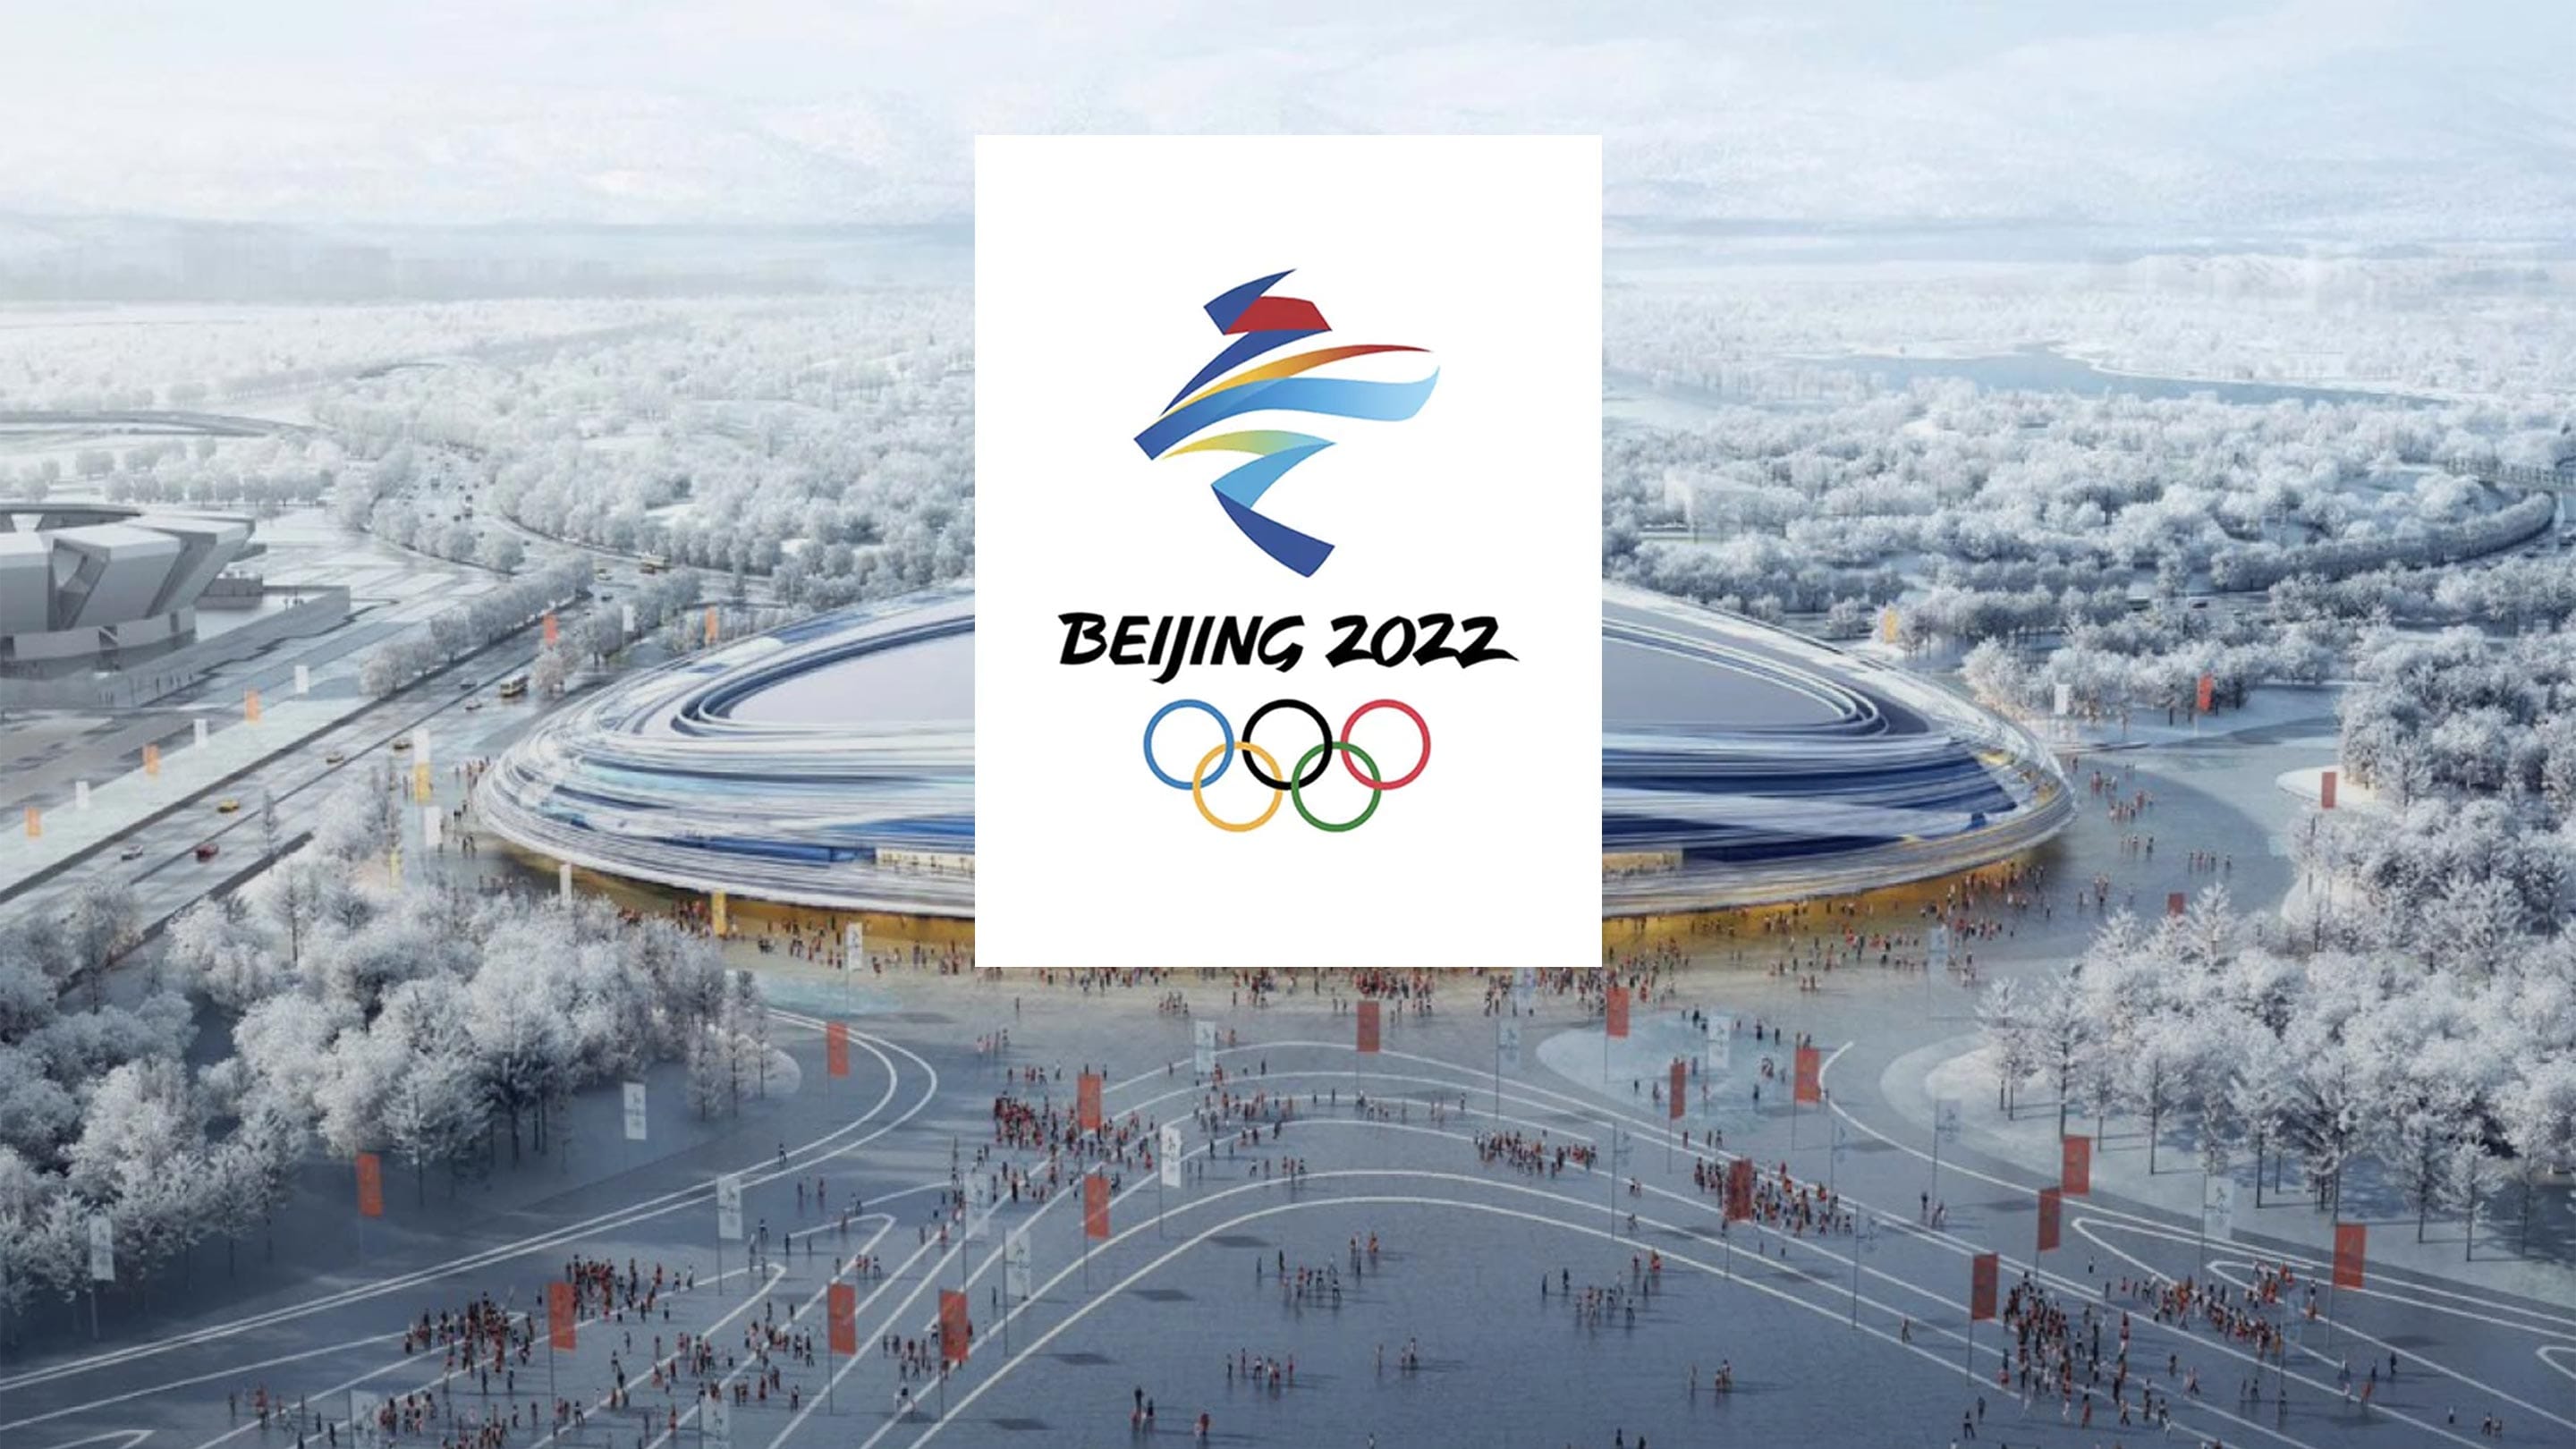 https://stillmed.olympics.com/media/Images/News/2021/09/2021-09-08-Beijing-featured.jpg